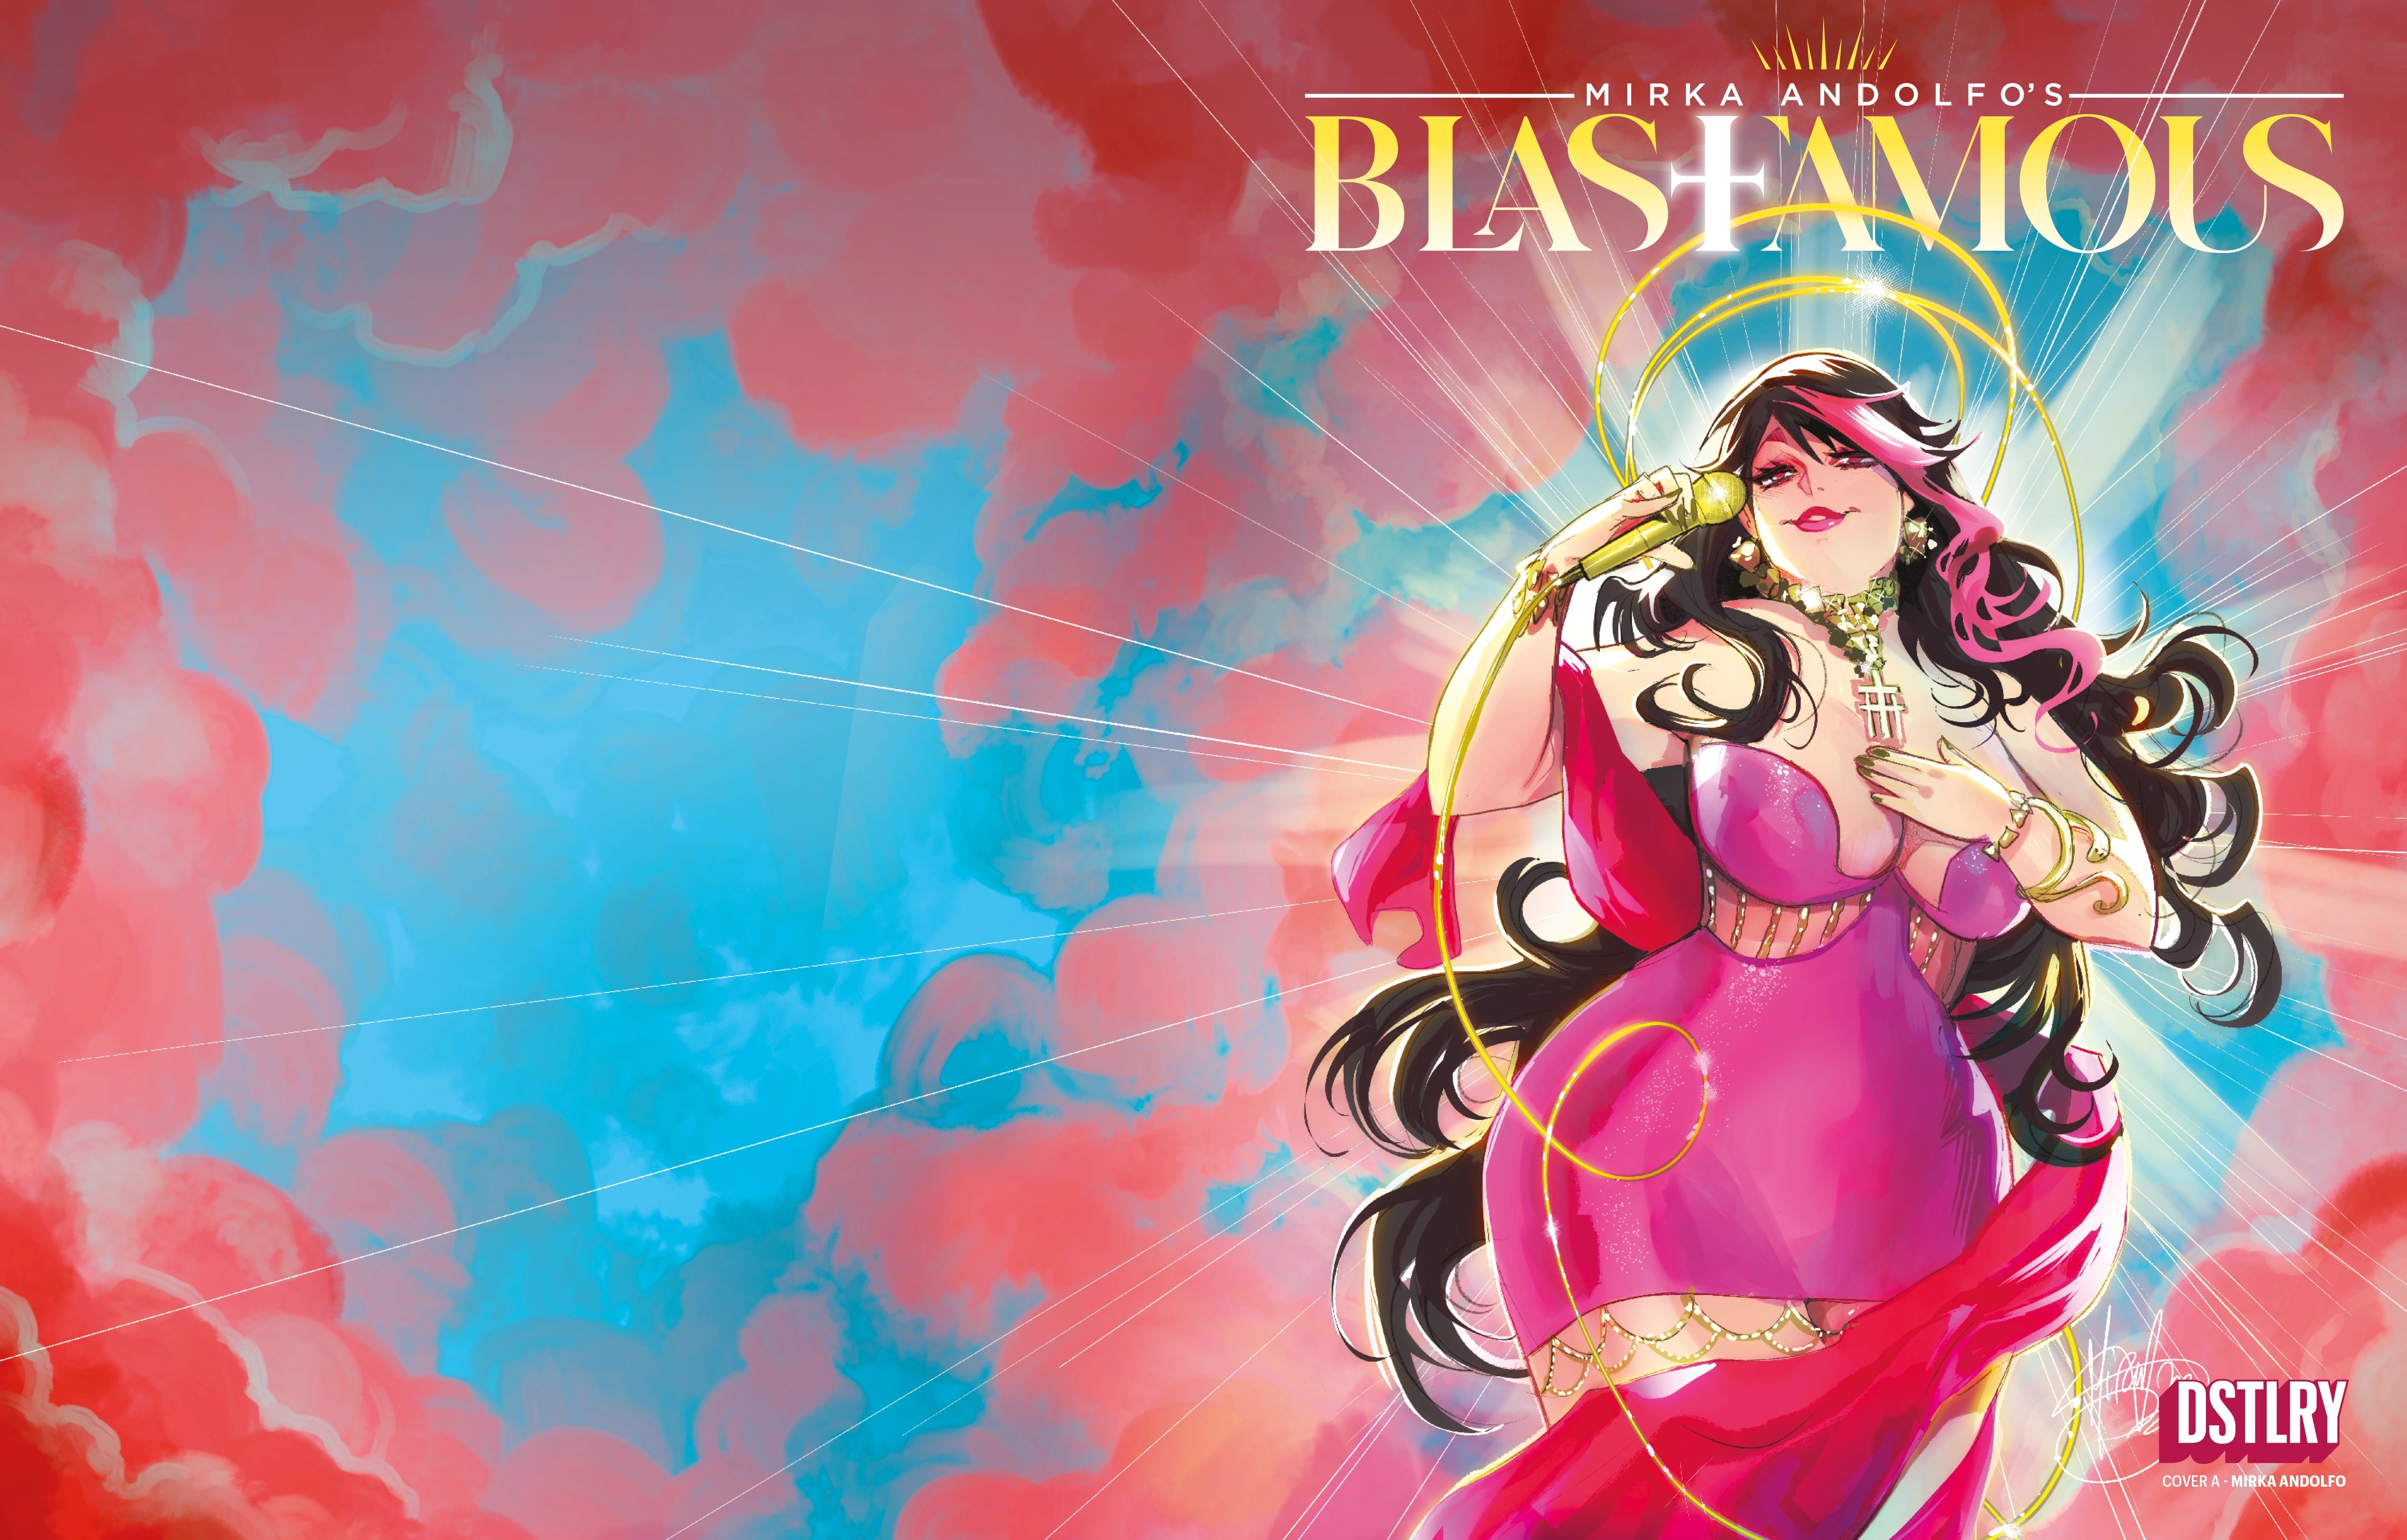 Blasfamous #1 Ashcan